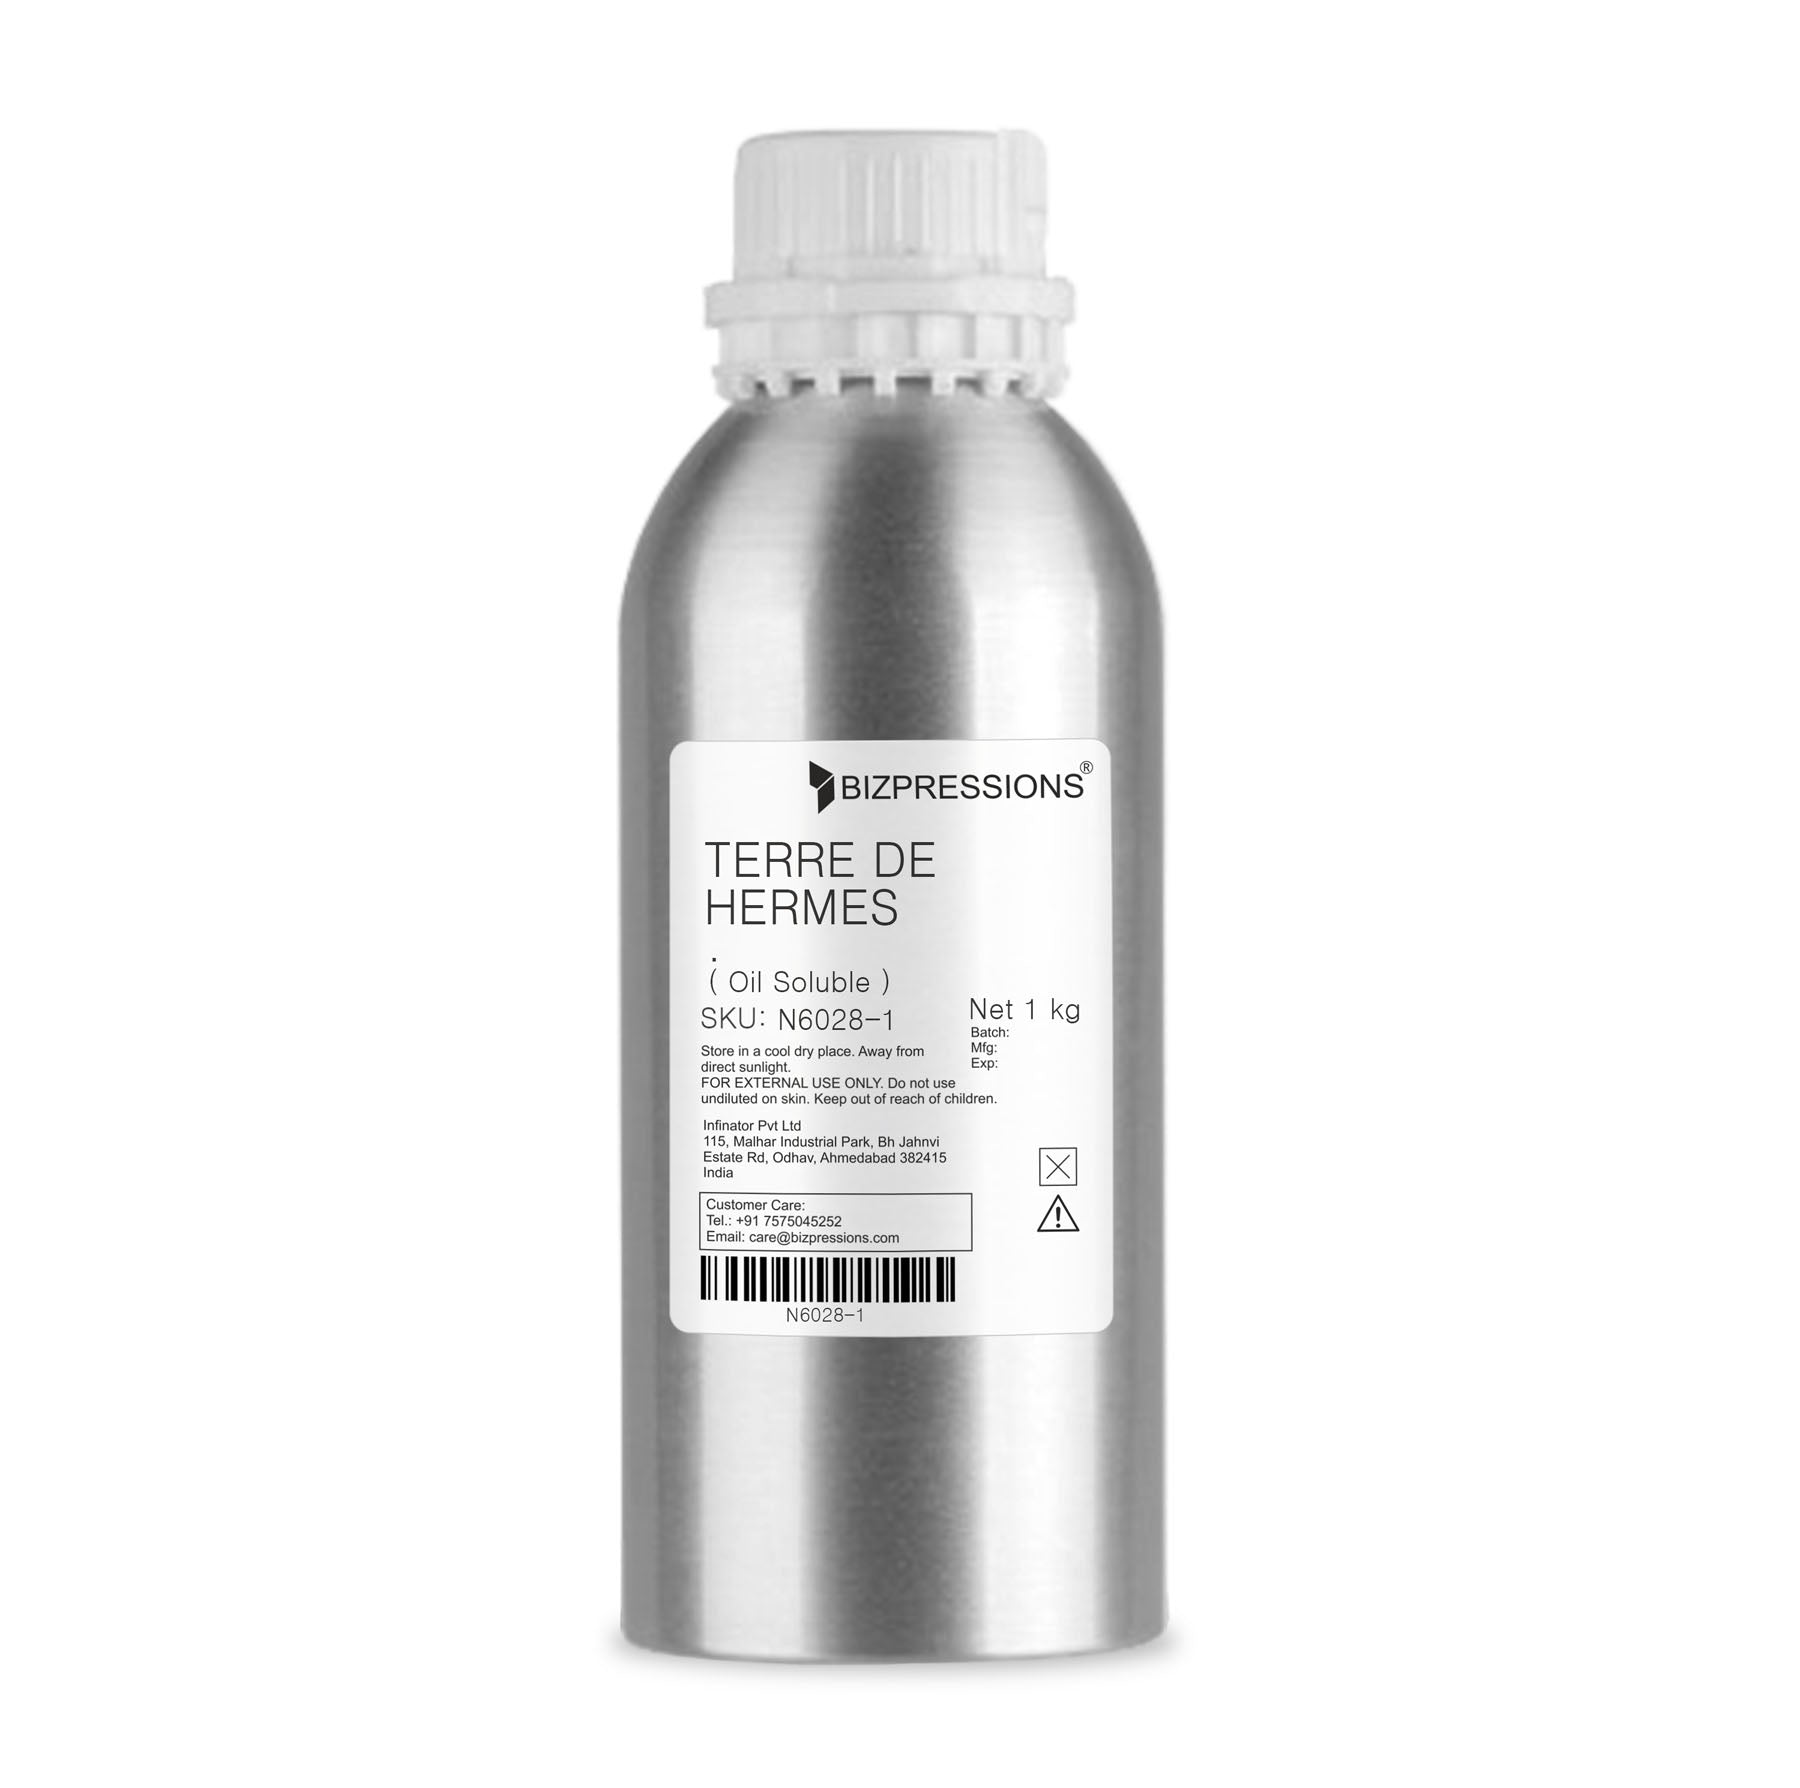 TERRE DE HERMES - Fragrance ( Oil Soluble ) - 1 kg